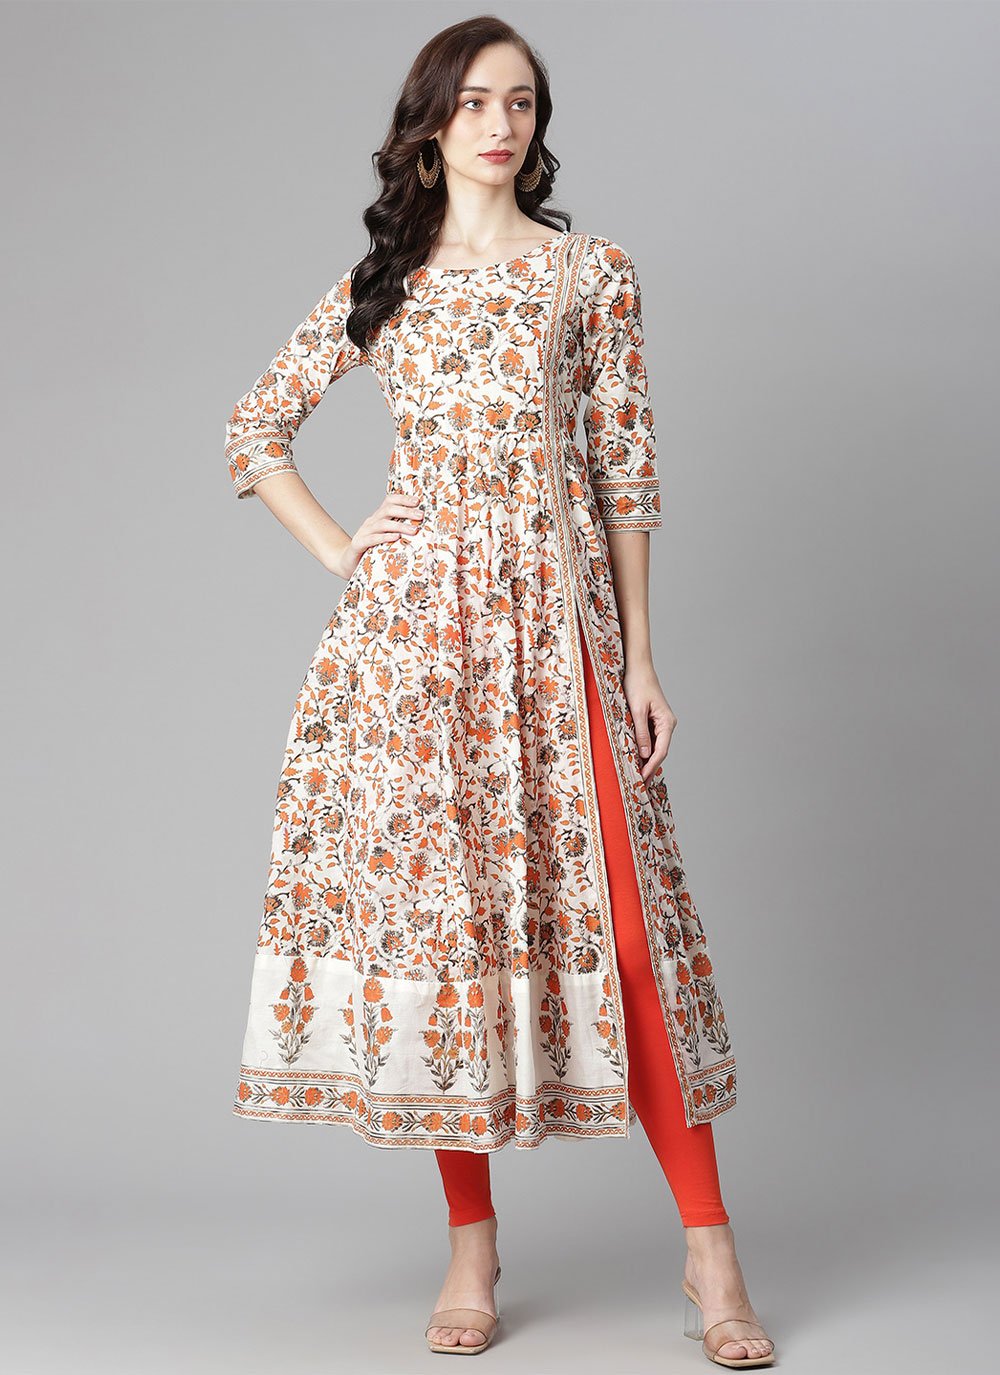 Buy Stylish Kurti For Women | Kurtis Online Shopping in India| Poshida -  Poshida - Medium